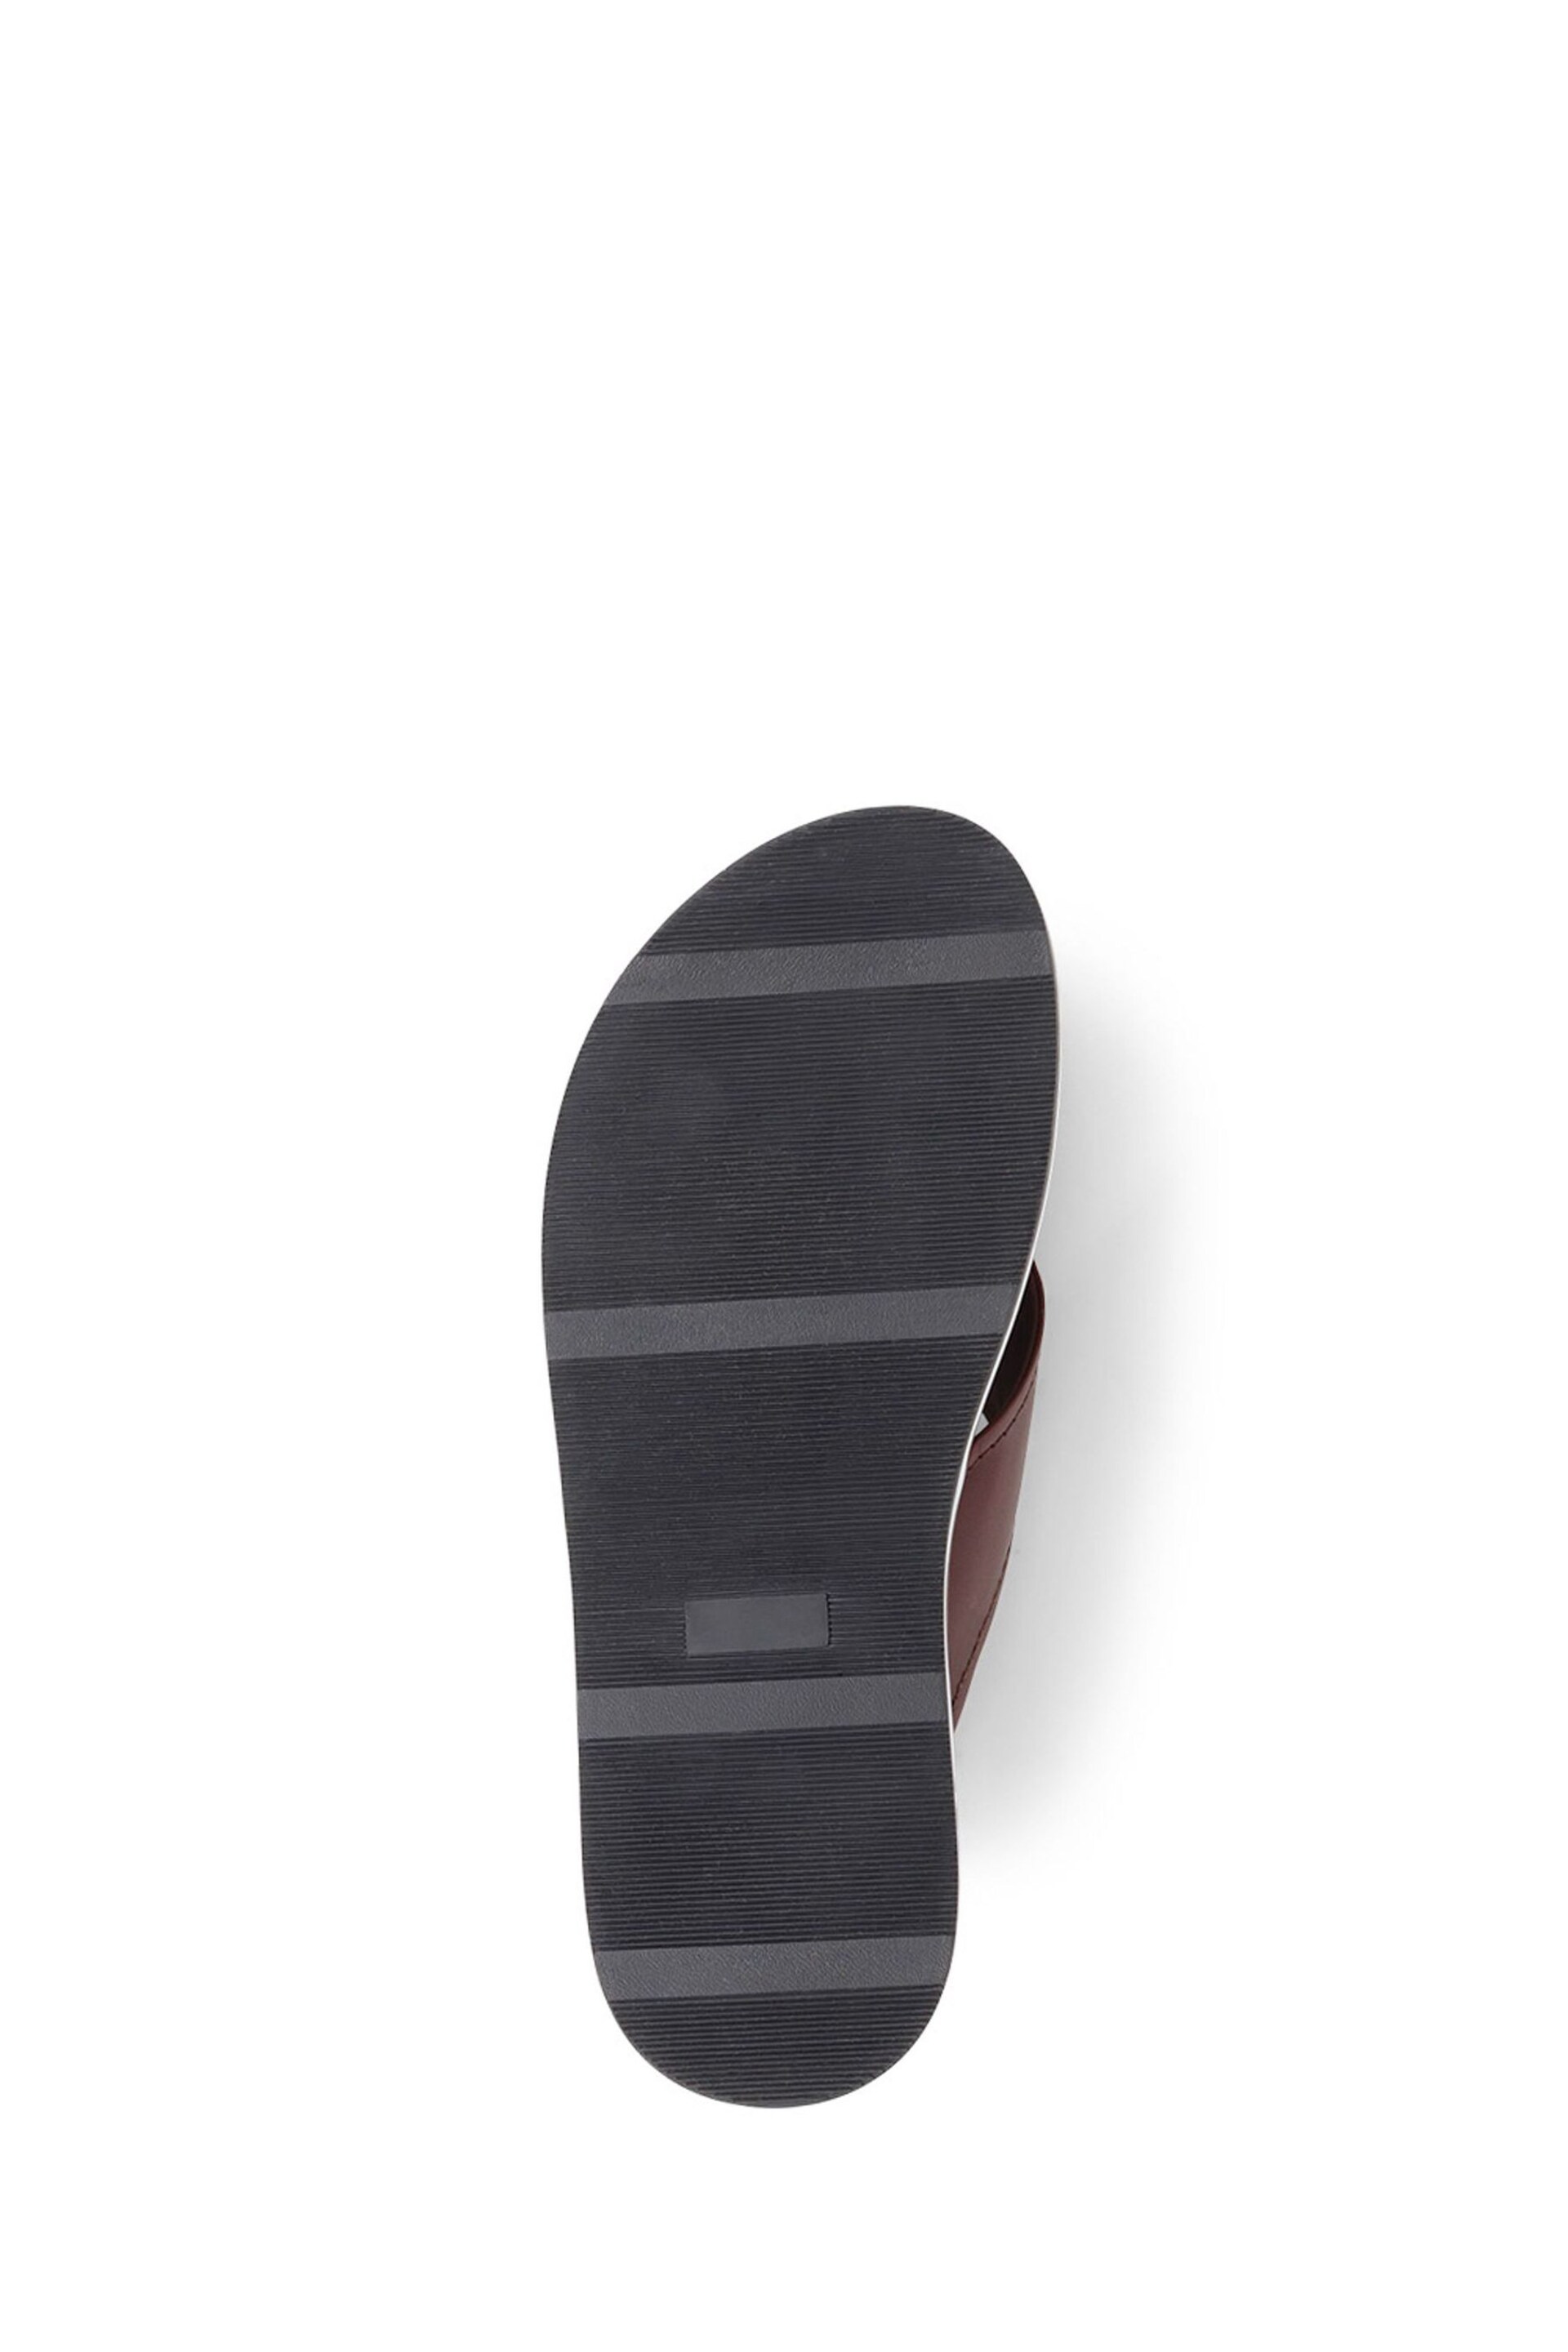 Jones Bootmaker Wealdstone Leather Toe Post Brown Sandals - Image 6 of 6